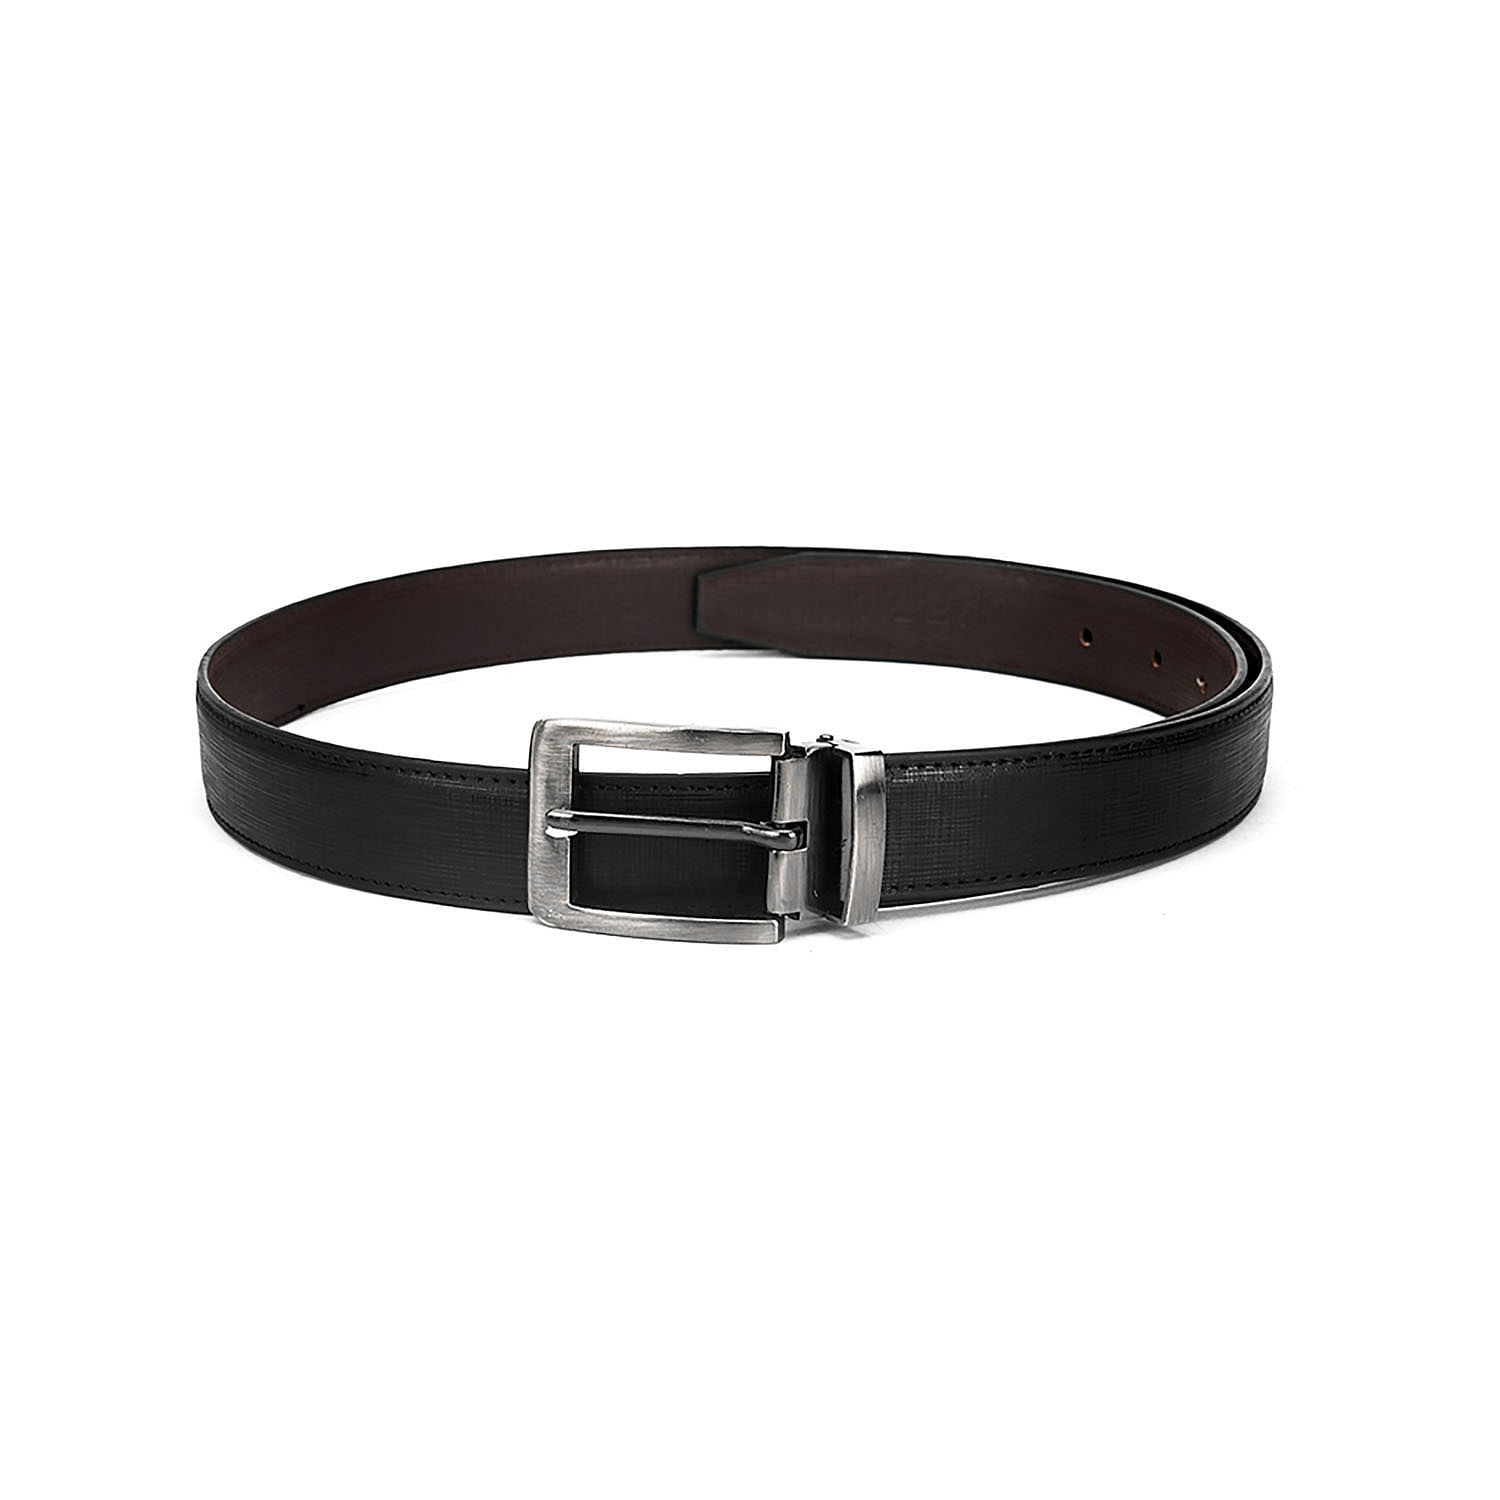 Men's Formal Belt with reversable Strap - FR-DB0008 - Black/Brown